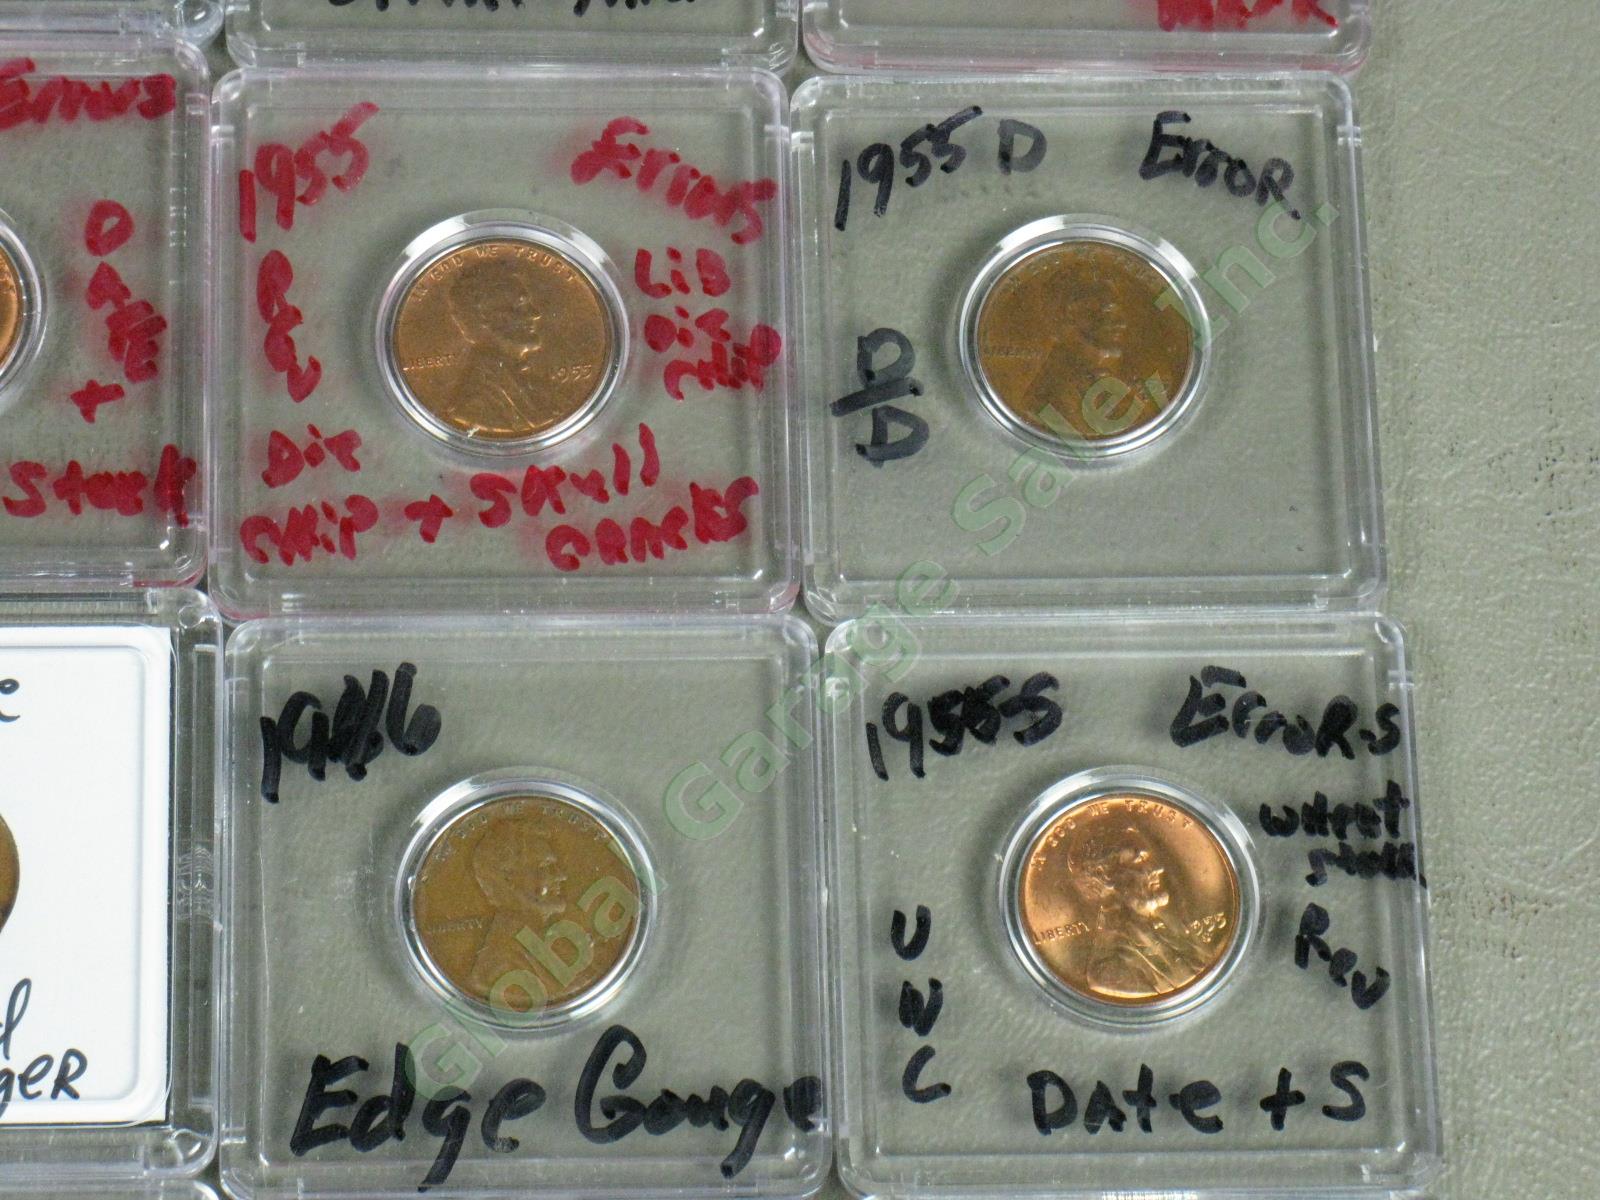 36 US Penny Mint Error Lot 12 UNC 1907 1917 1969-S ++ Doubles Die Cracks Wide AM 6